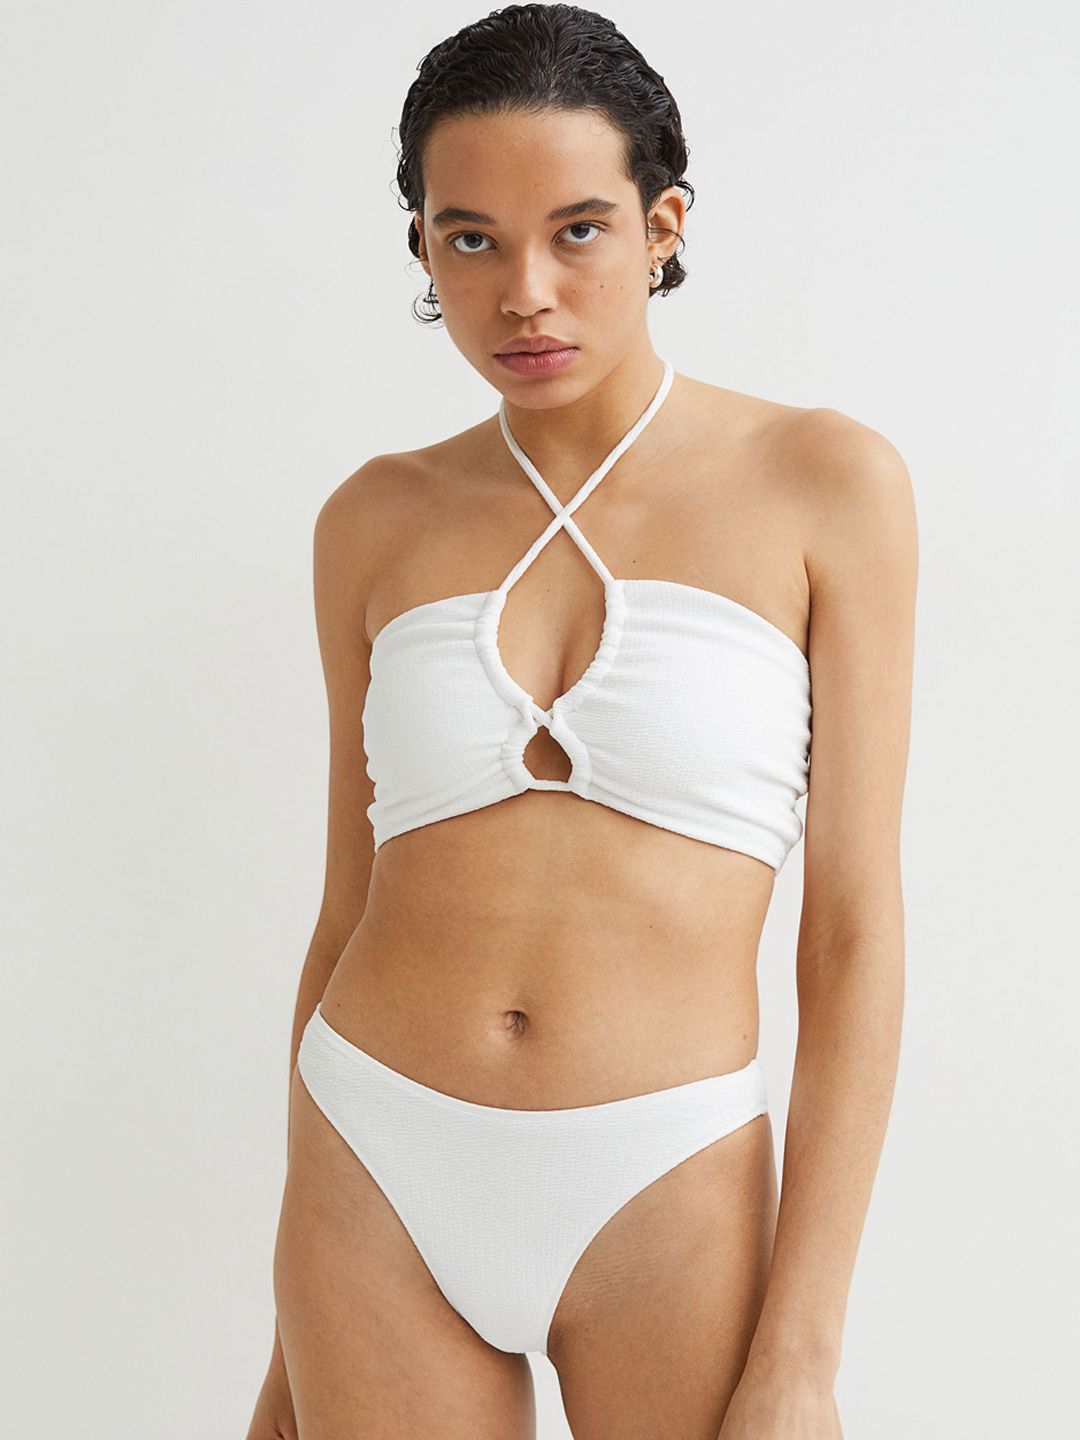 H&M White Brazilian Bikini Bottoms Price in India